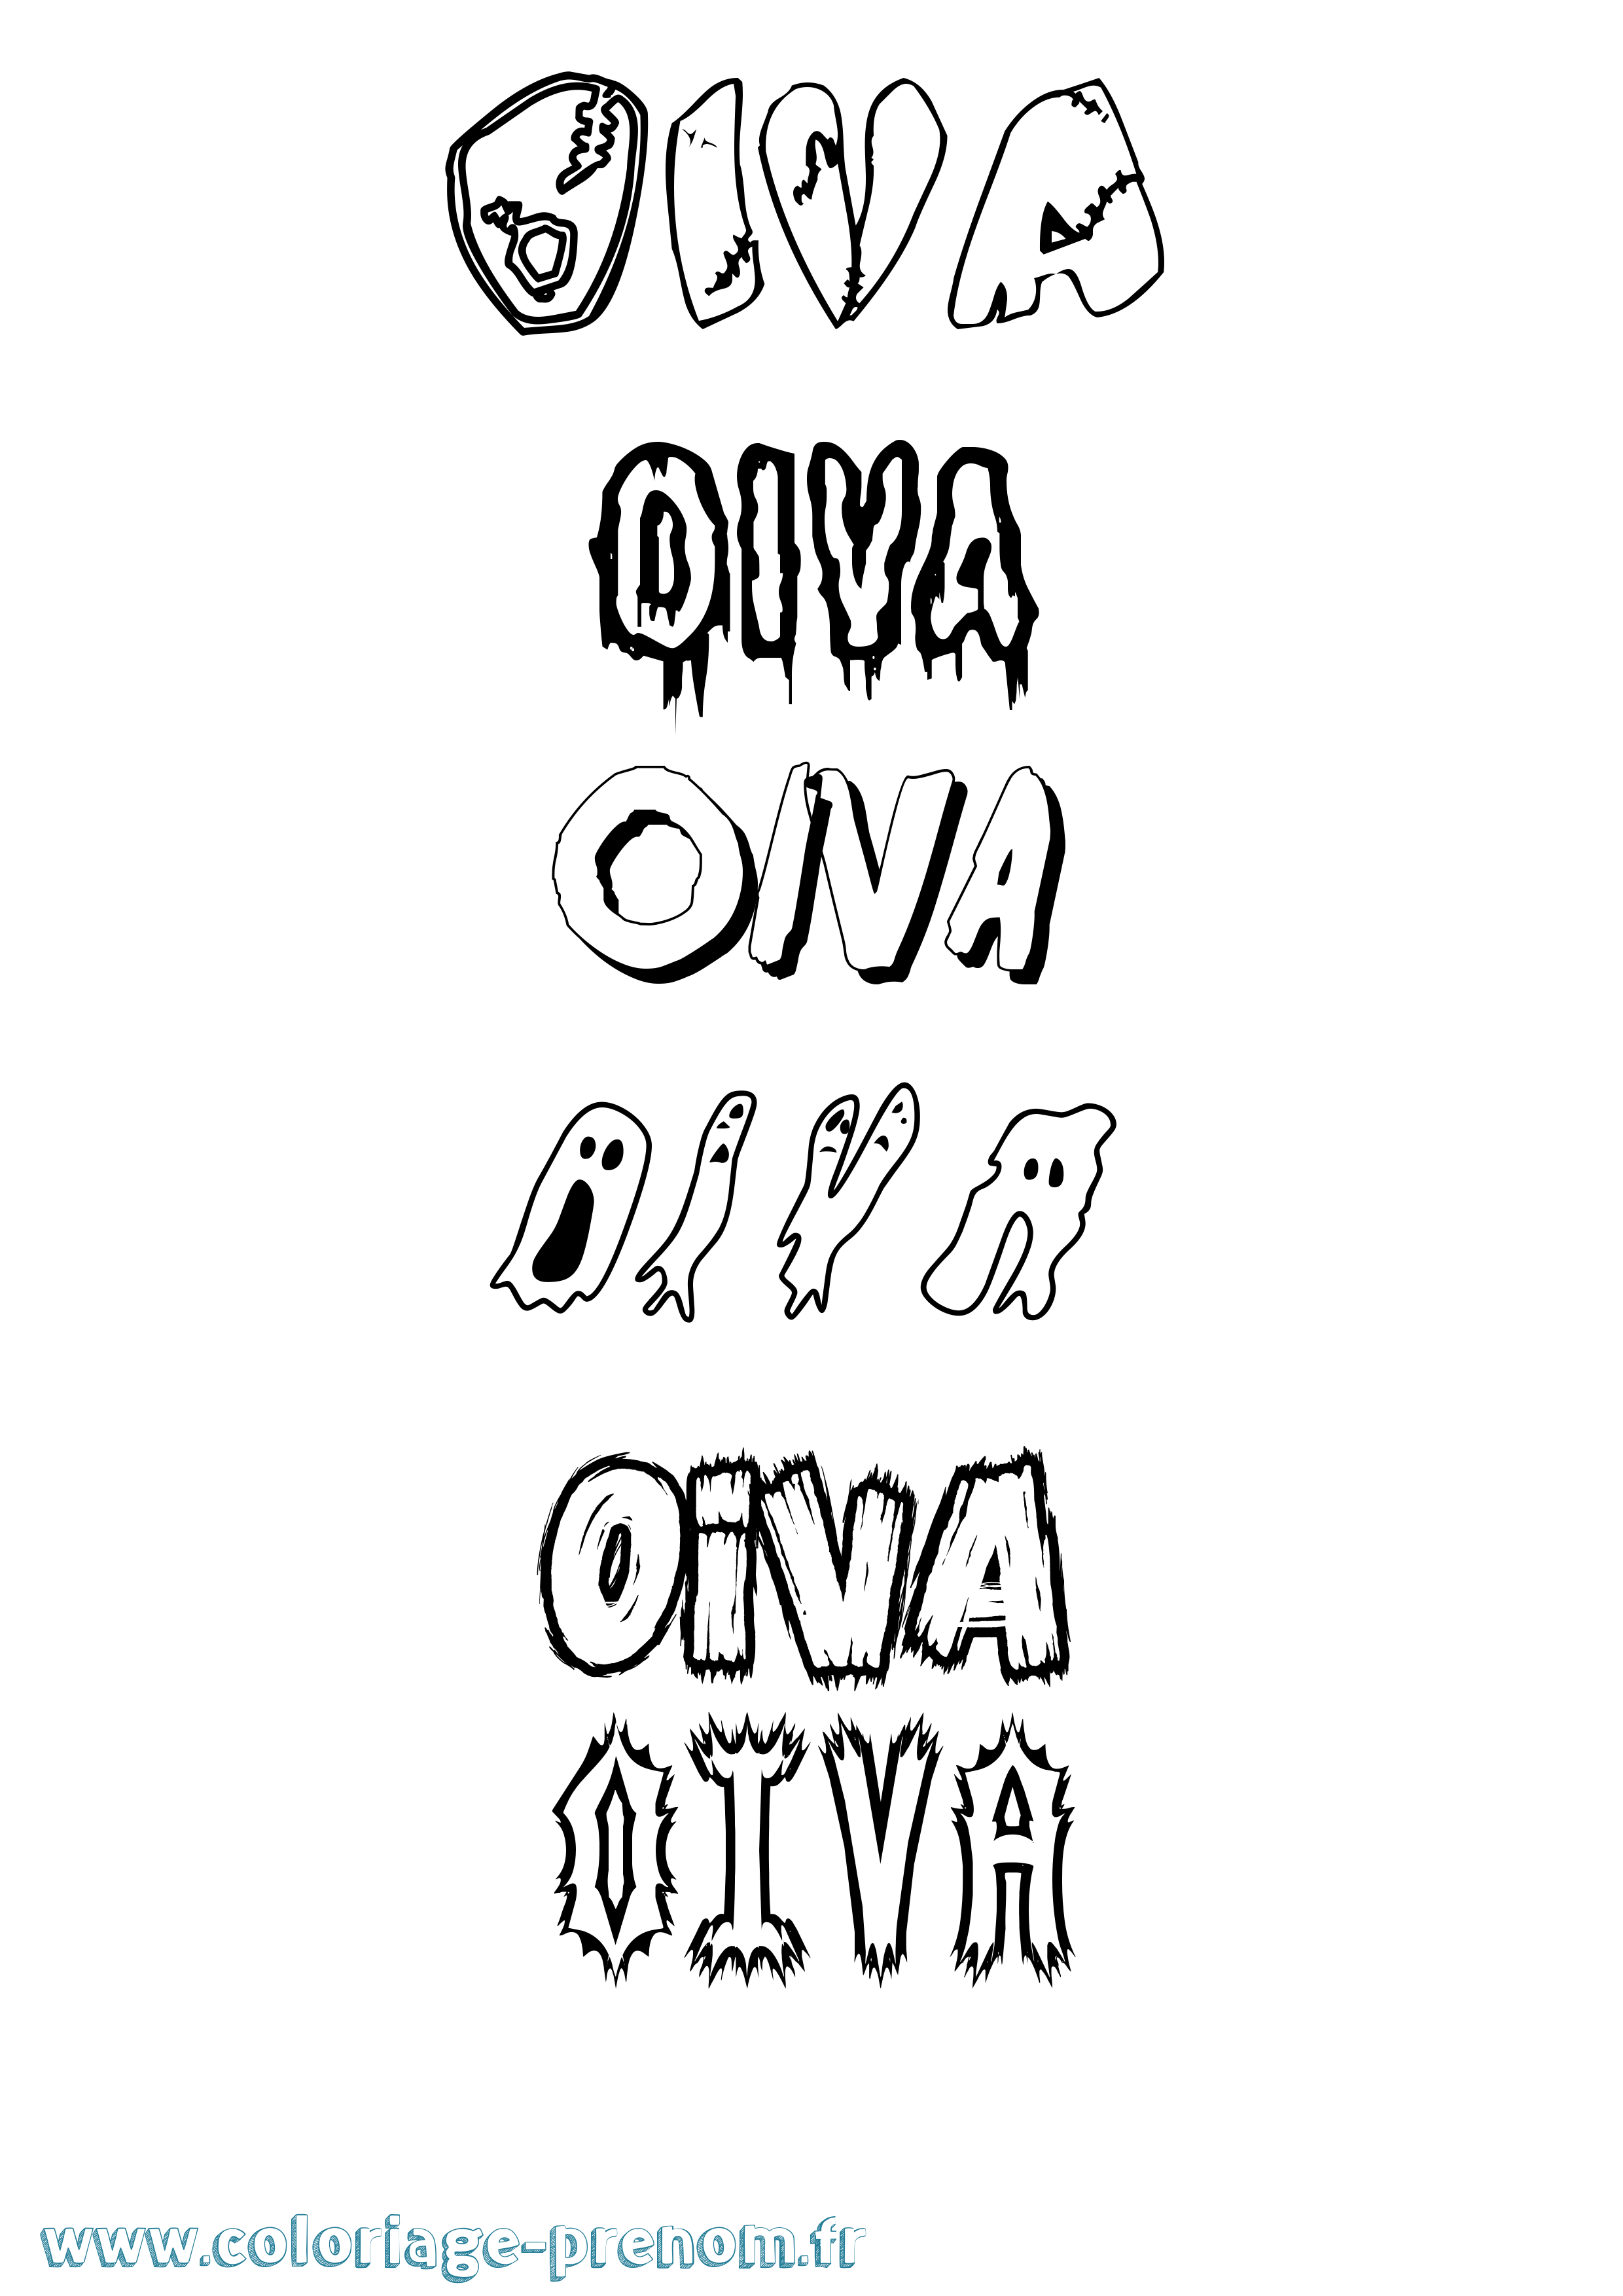 Coloriage prénom Oiva Frisson